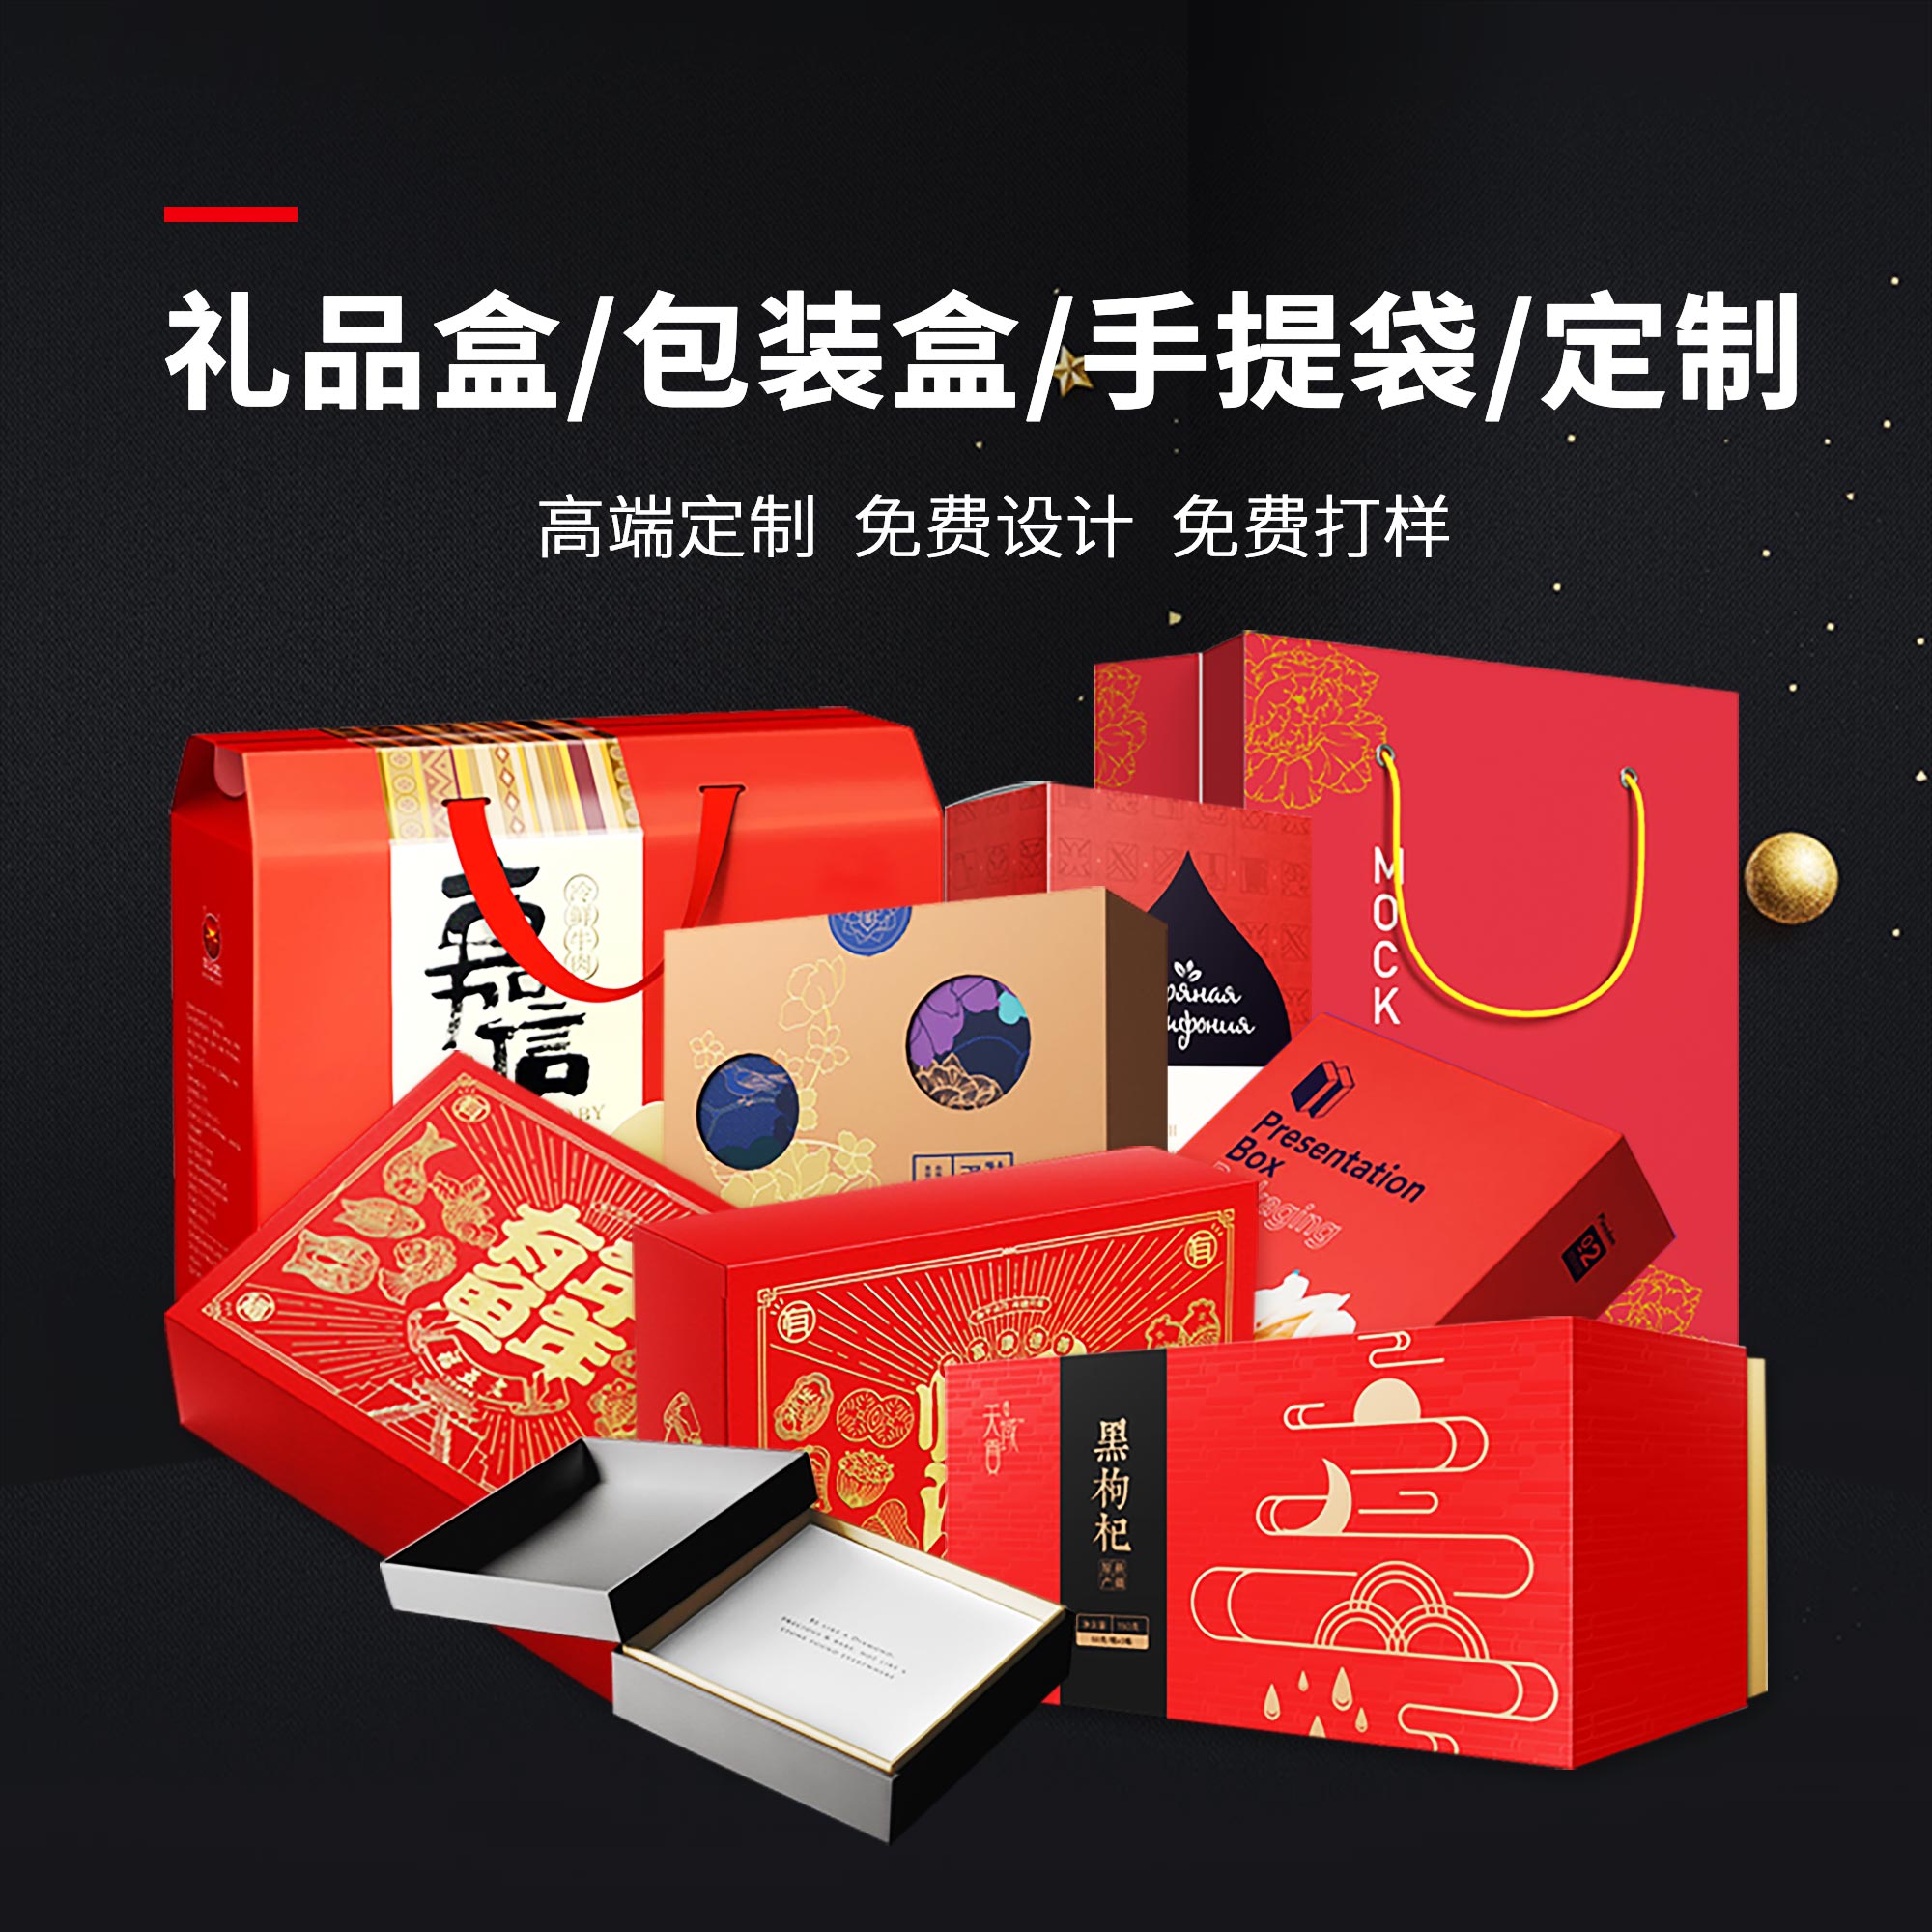 产品外包装盒定做礼品盒定制高档茶叶礼盒子制作保健品精品盒印刷